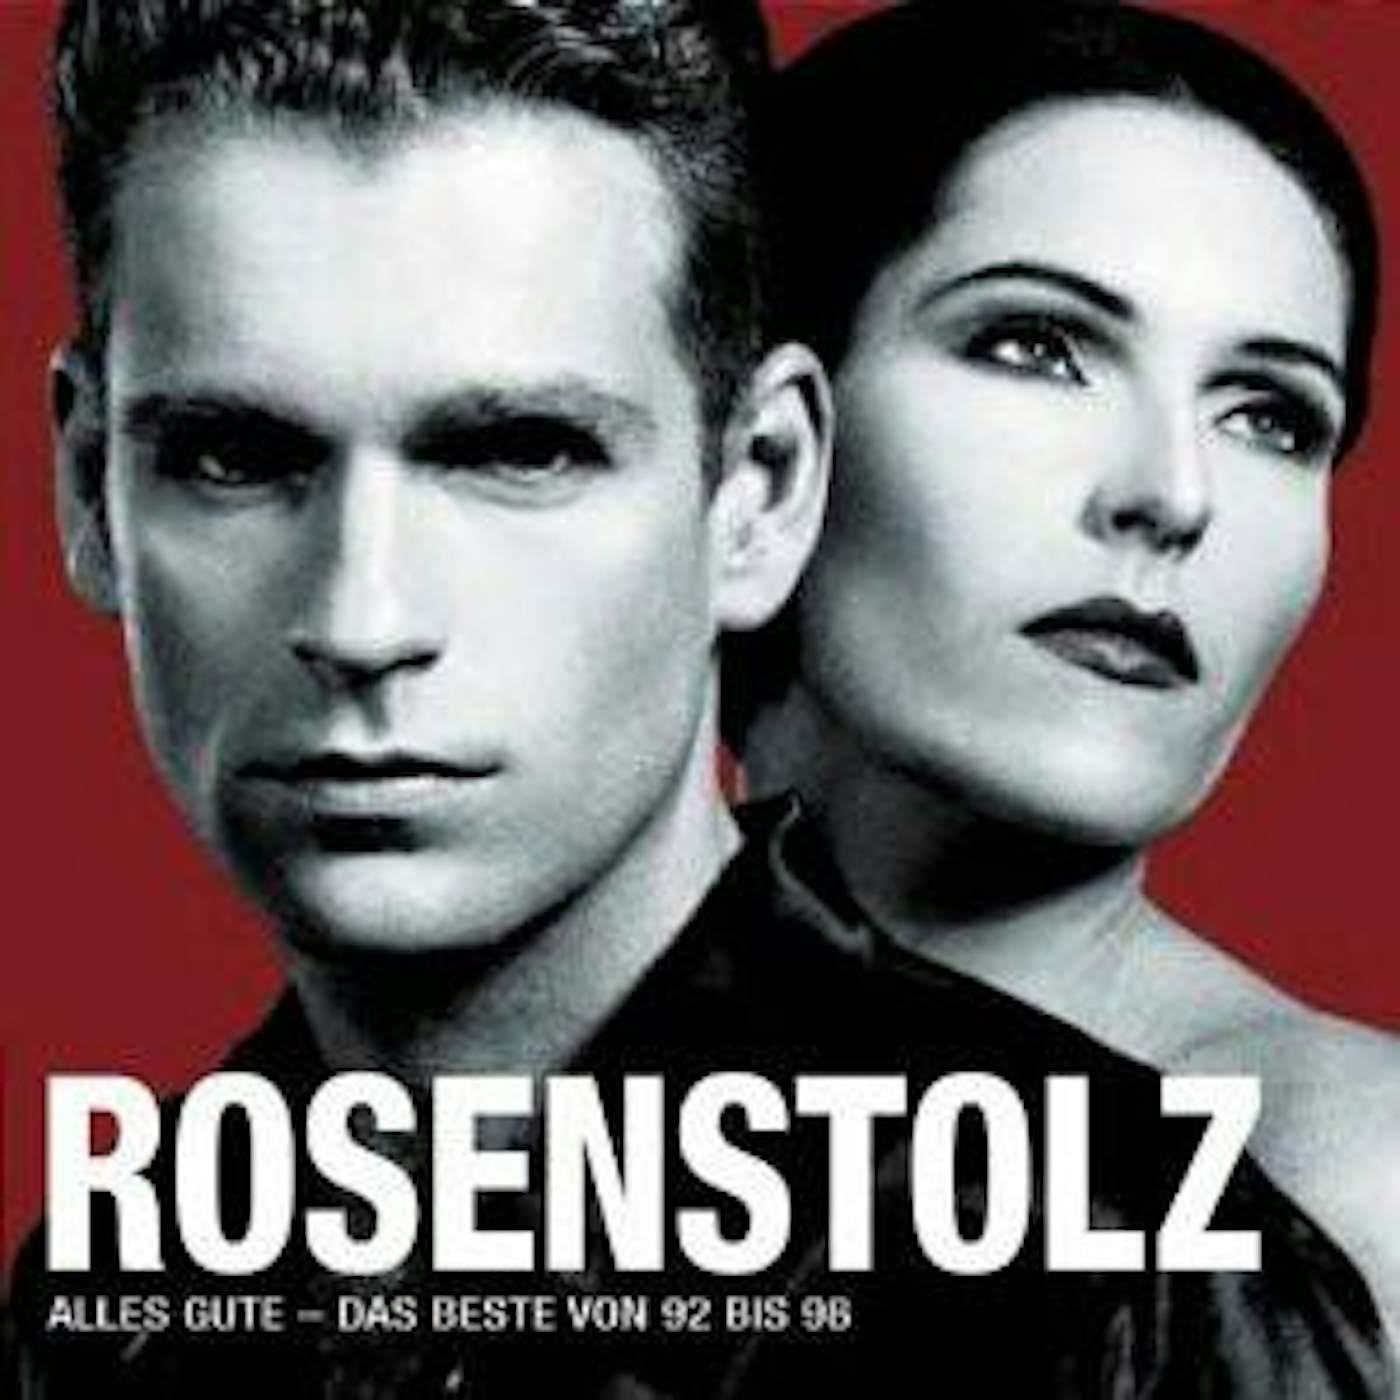 Rosenstolz ALLES GUTE CD